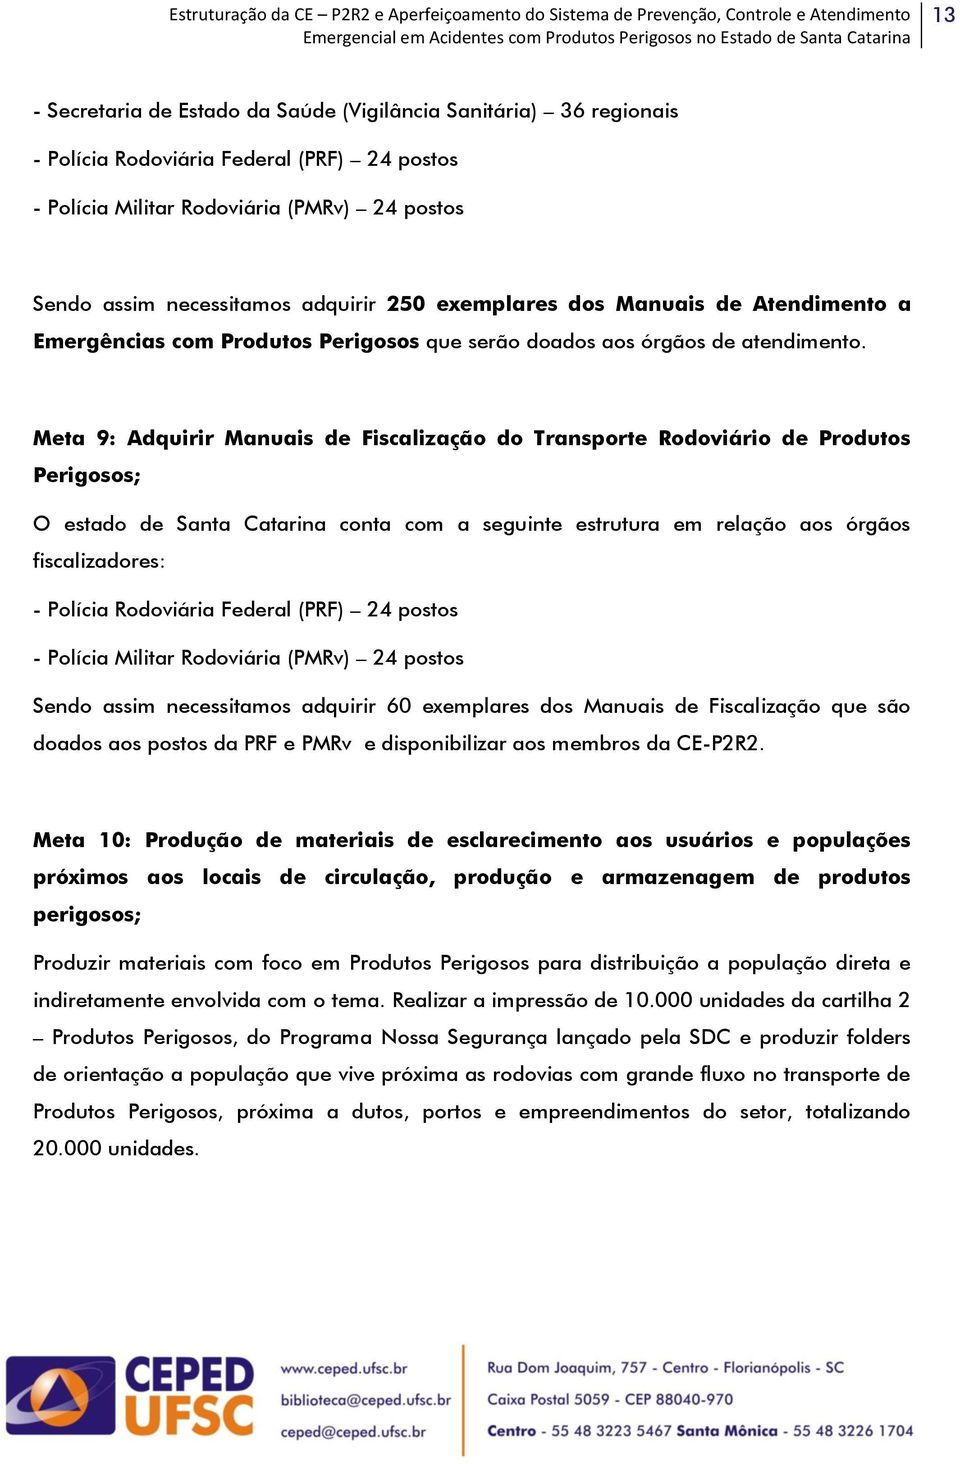 Meta 9: Adquirir Manuais de Fiscalização do Transporte Rodoviário de Produtos Perigosos; O estado de Santa Catarina conta com a seguinte estrutura em relação aos órgãos fiscalizadores: - Polícia